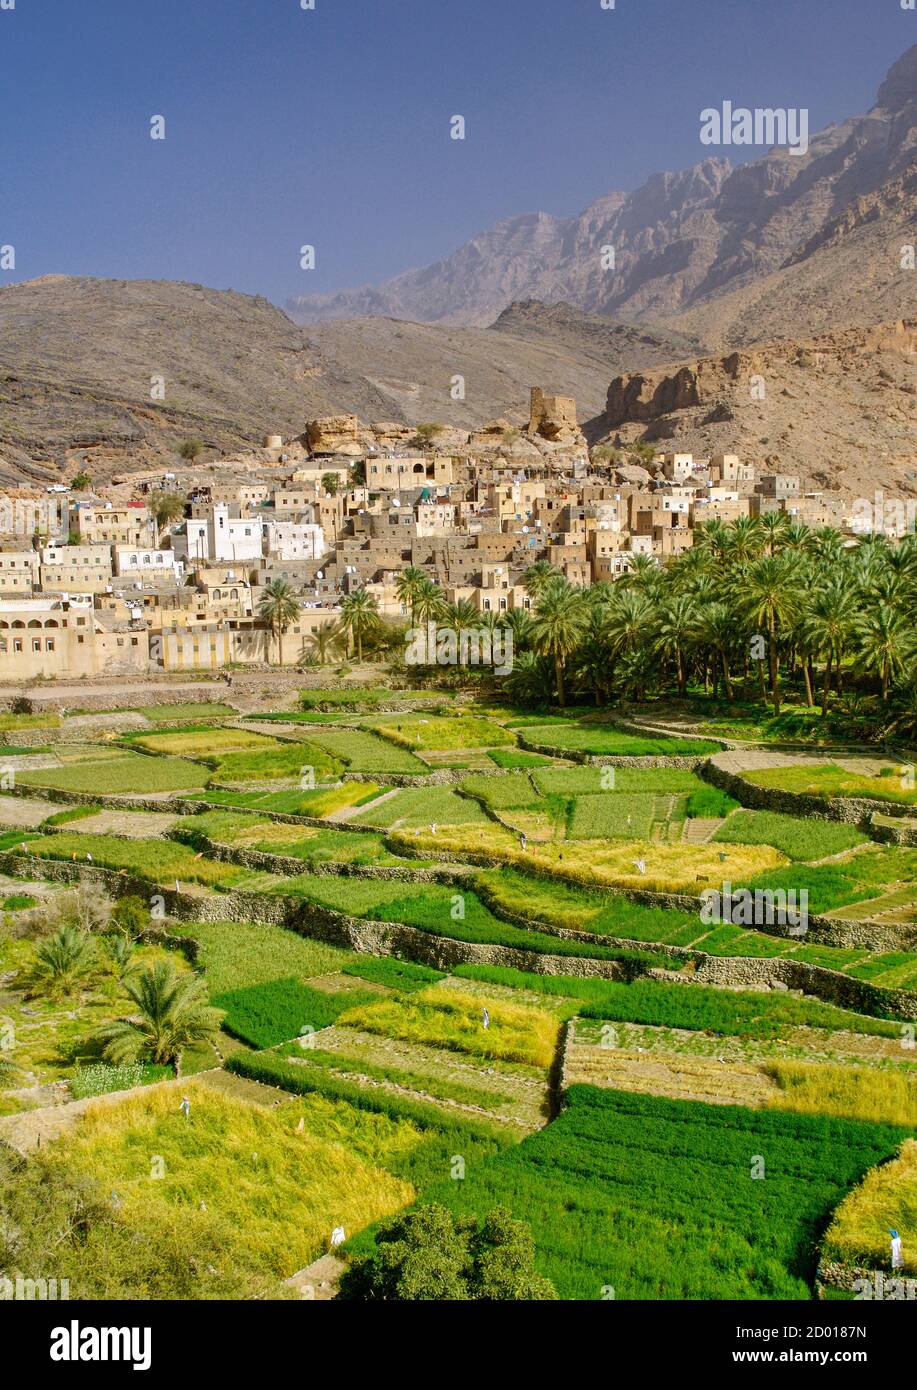 Il villaggio di Bilad Seet e le sue piantagioni a Wadi Bani Auf nelle montagne Jebel Akhdar di Oman. Foto Stock